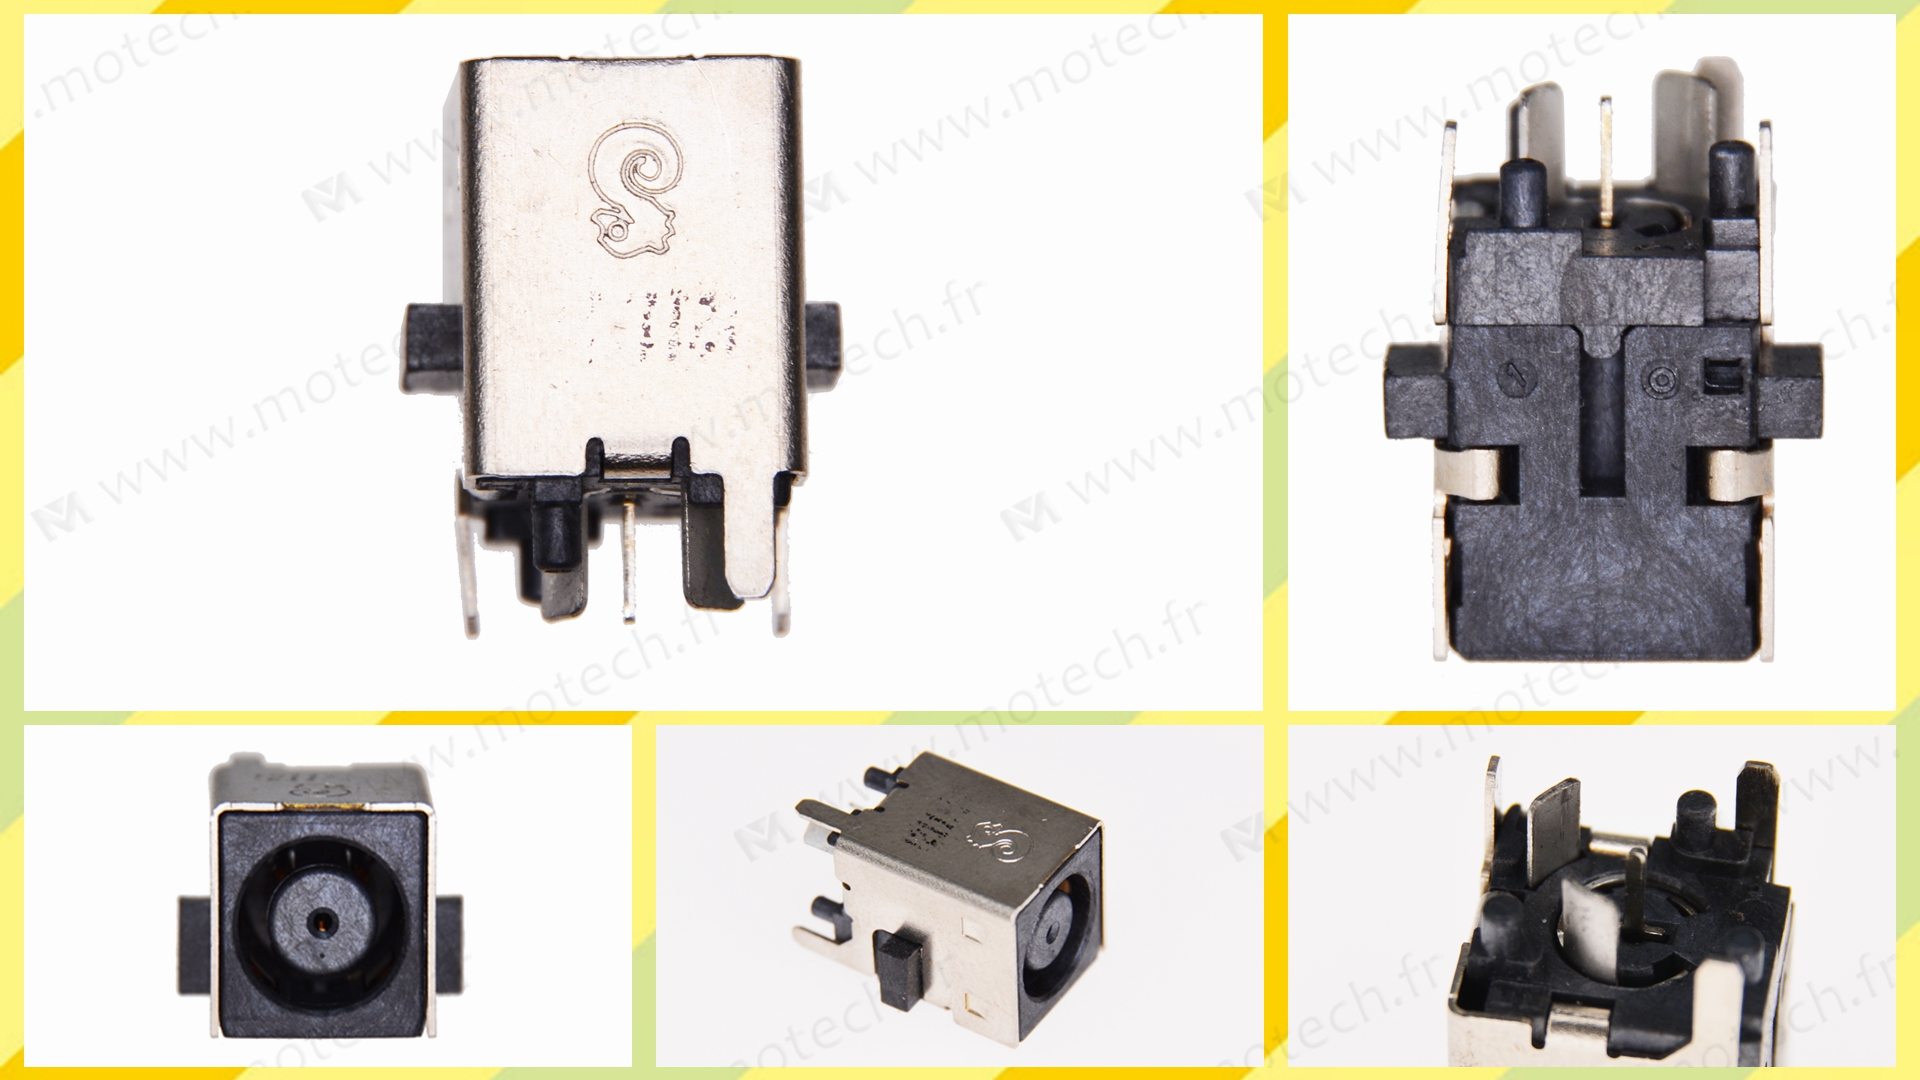 HP 23-B 电源接口, HP 23-B 充电口, HP 23-B 电源头, HP 23-B 电源口, HP 23-B 不充电, HP 23-B 充电故障, 